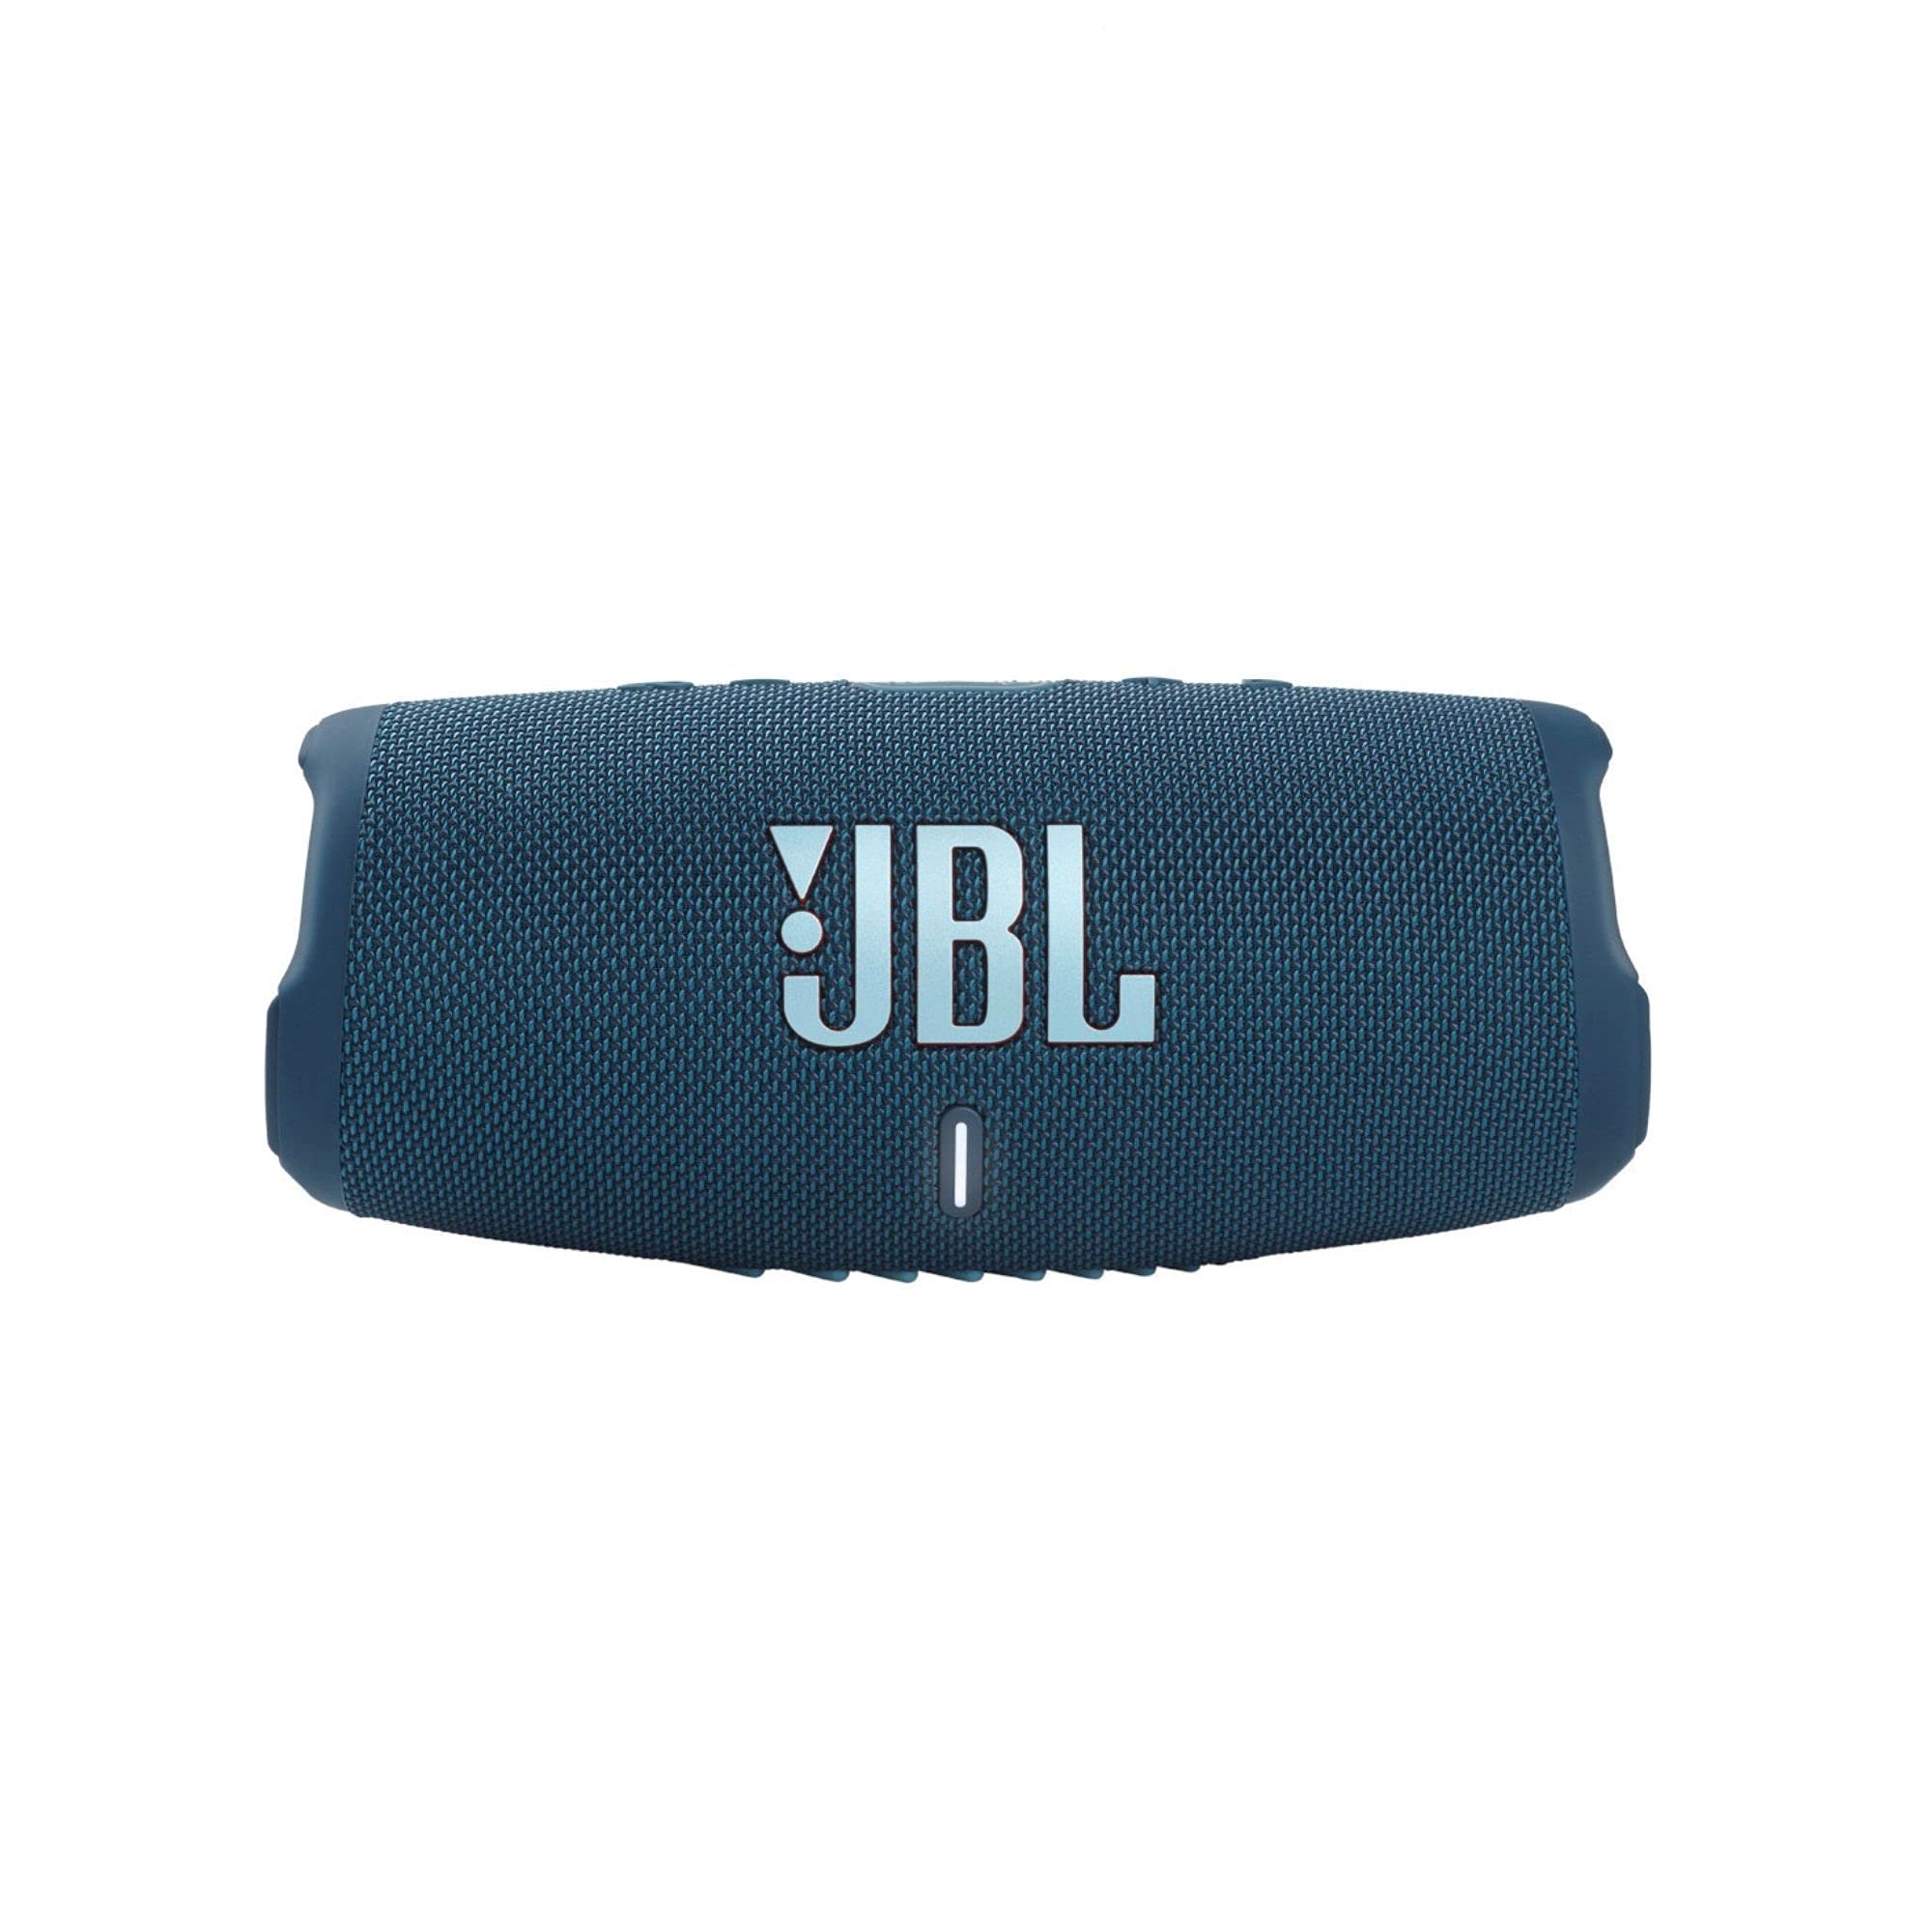 JBL Charge 5 - Alto-falante Bluetooth portátil com IP67 à prova d'água e saída de carga USB - azul (renovado)